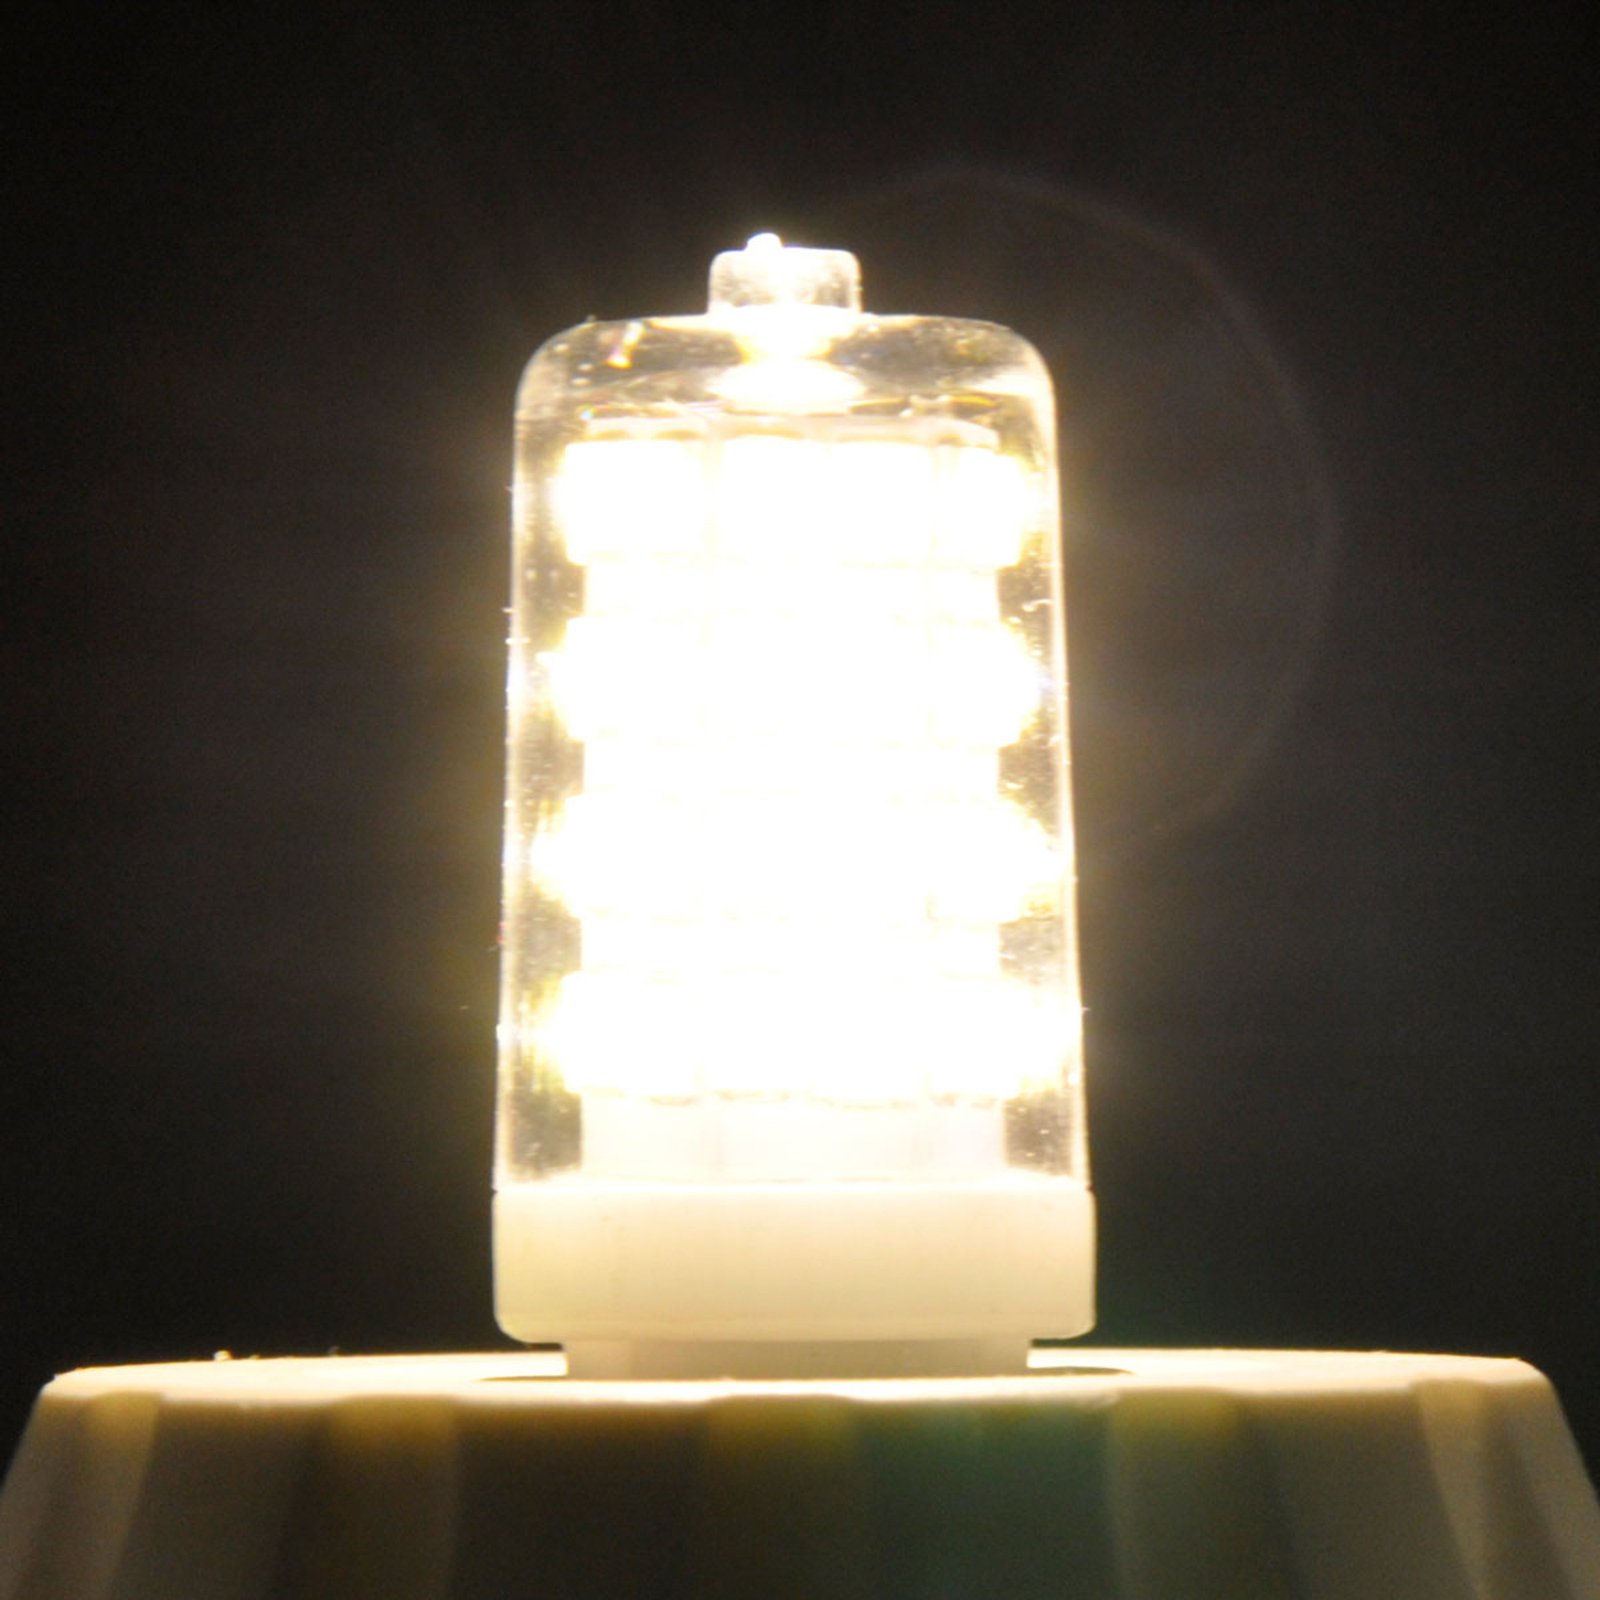 LED kolíková žárovka G9 3W, teplá bílá, 330lm 10ks